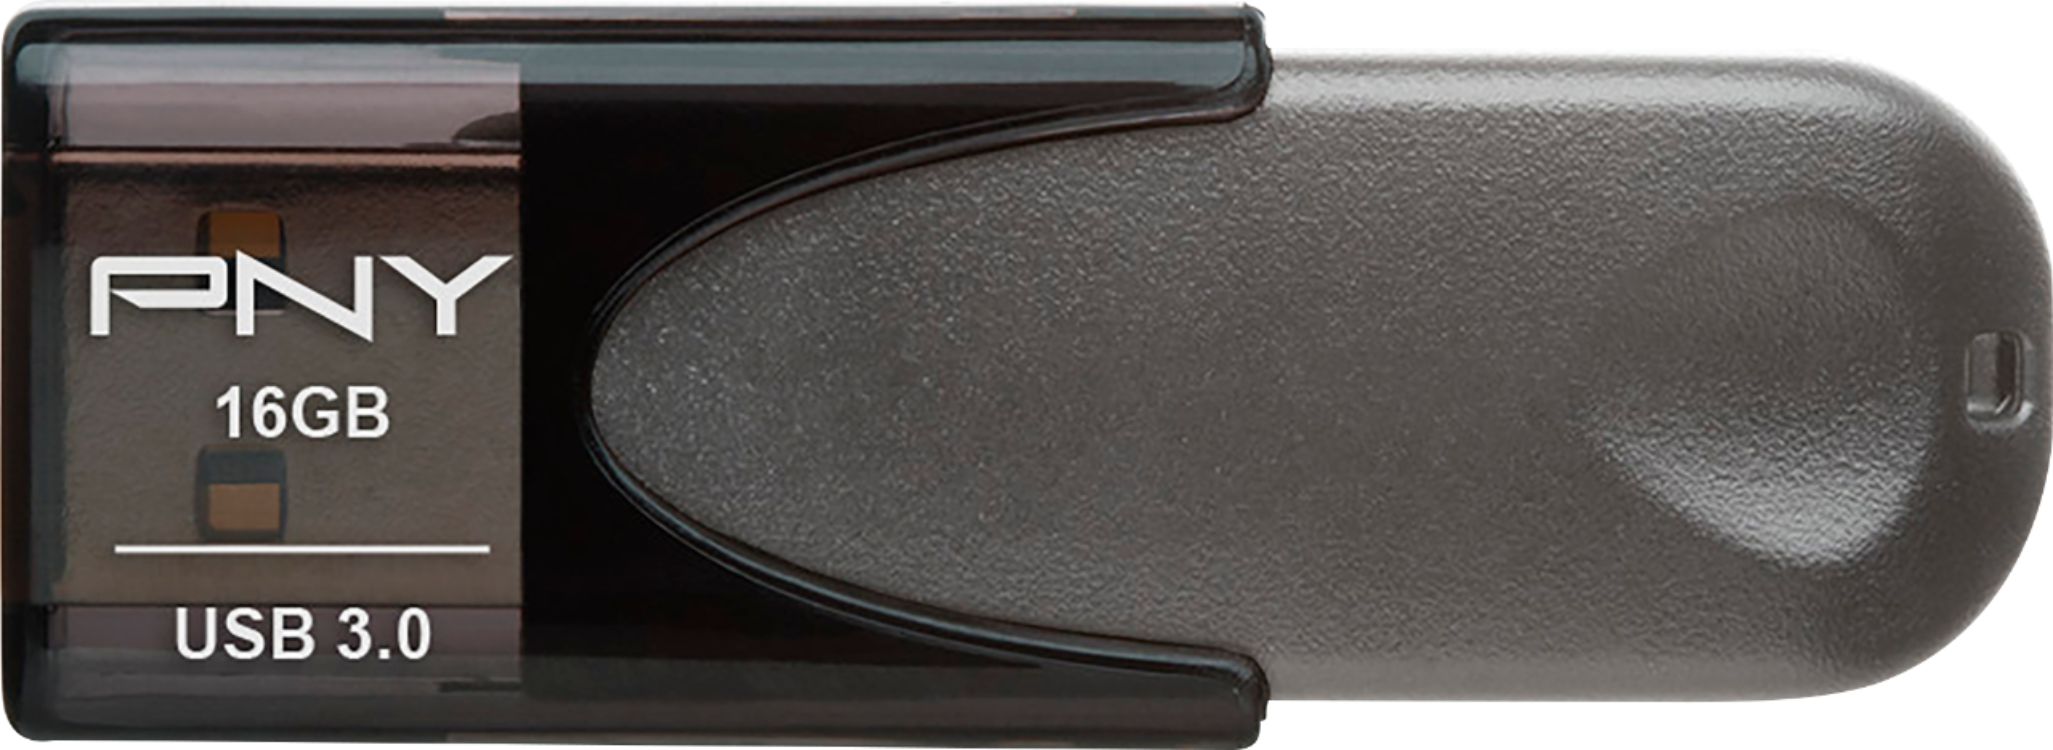 PNY P-FD16GTBOP-GE Turbo 16GB USB 3.0 Flash Drive - Black